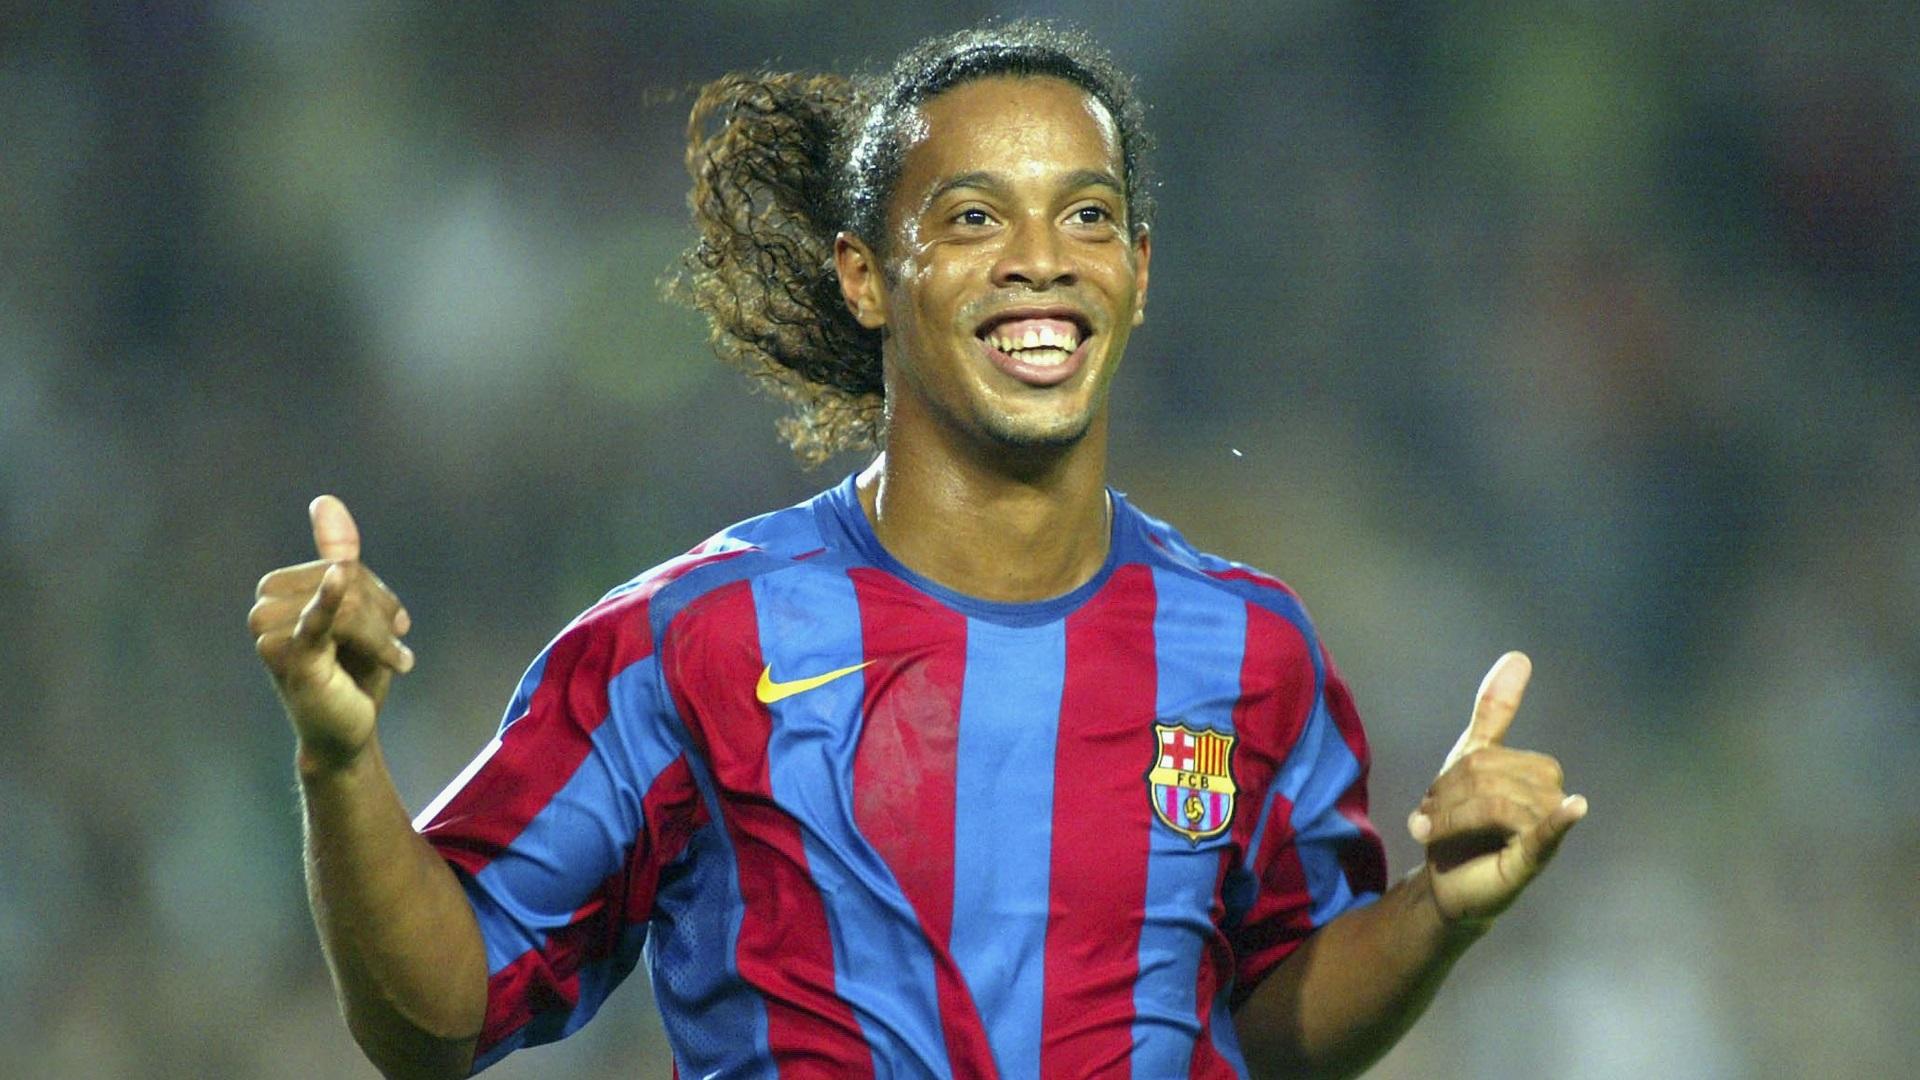 Datos curioso que no sabias de Ronaldinho